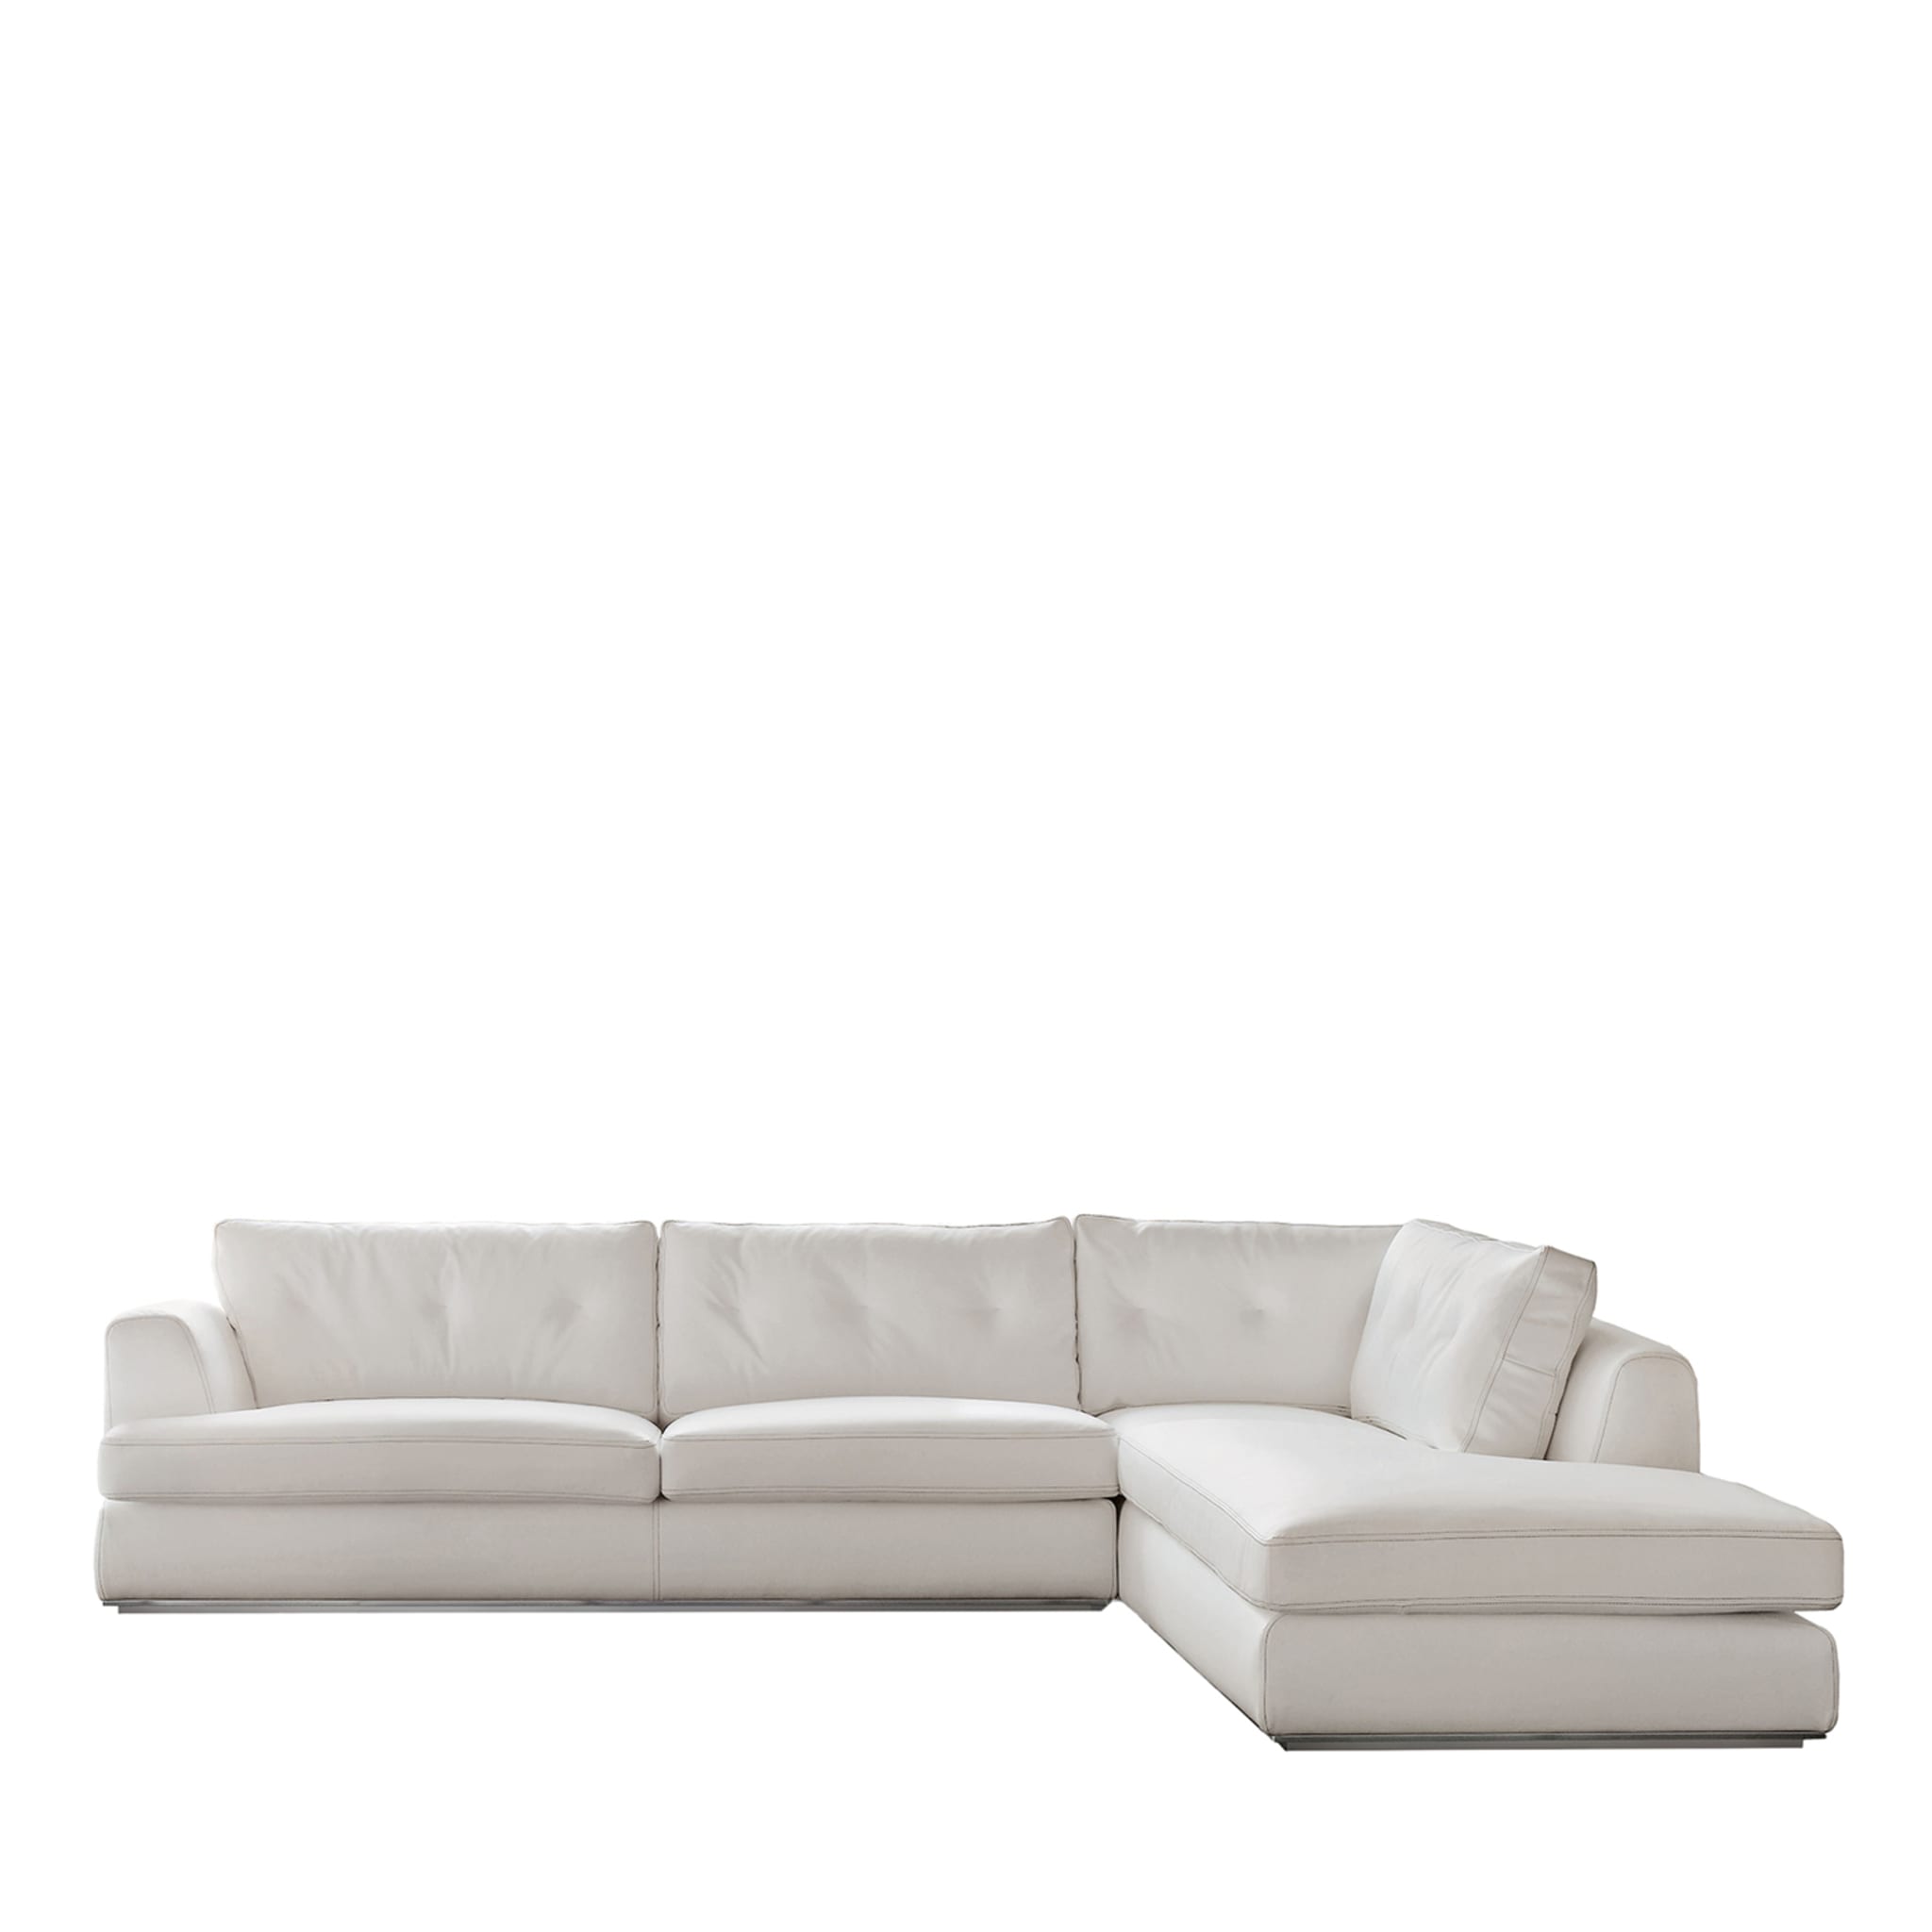 Ascot Weißes modulares sofa von Giuseppe Bavuso  - Hauptansicht